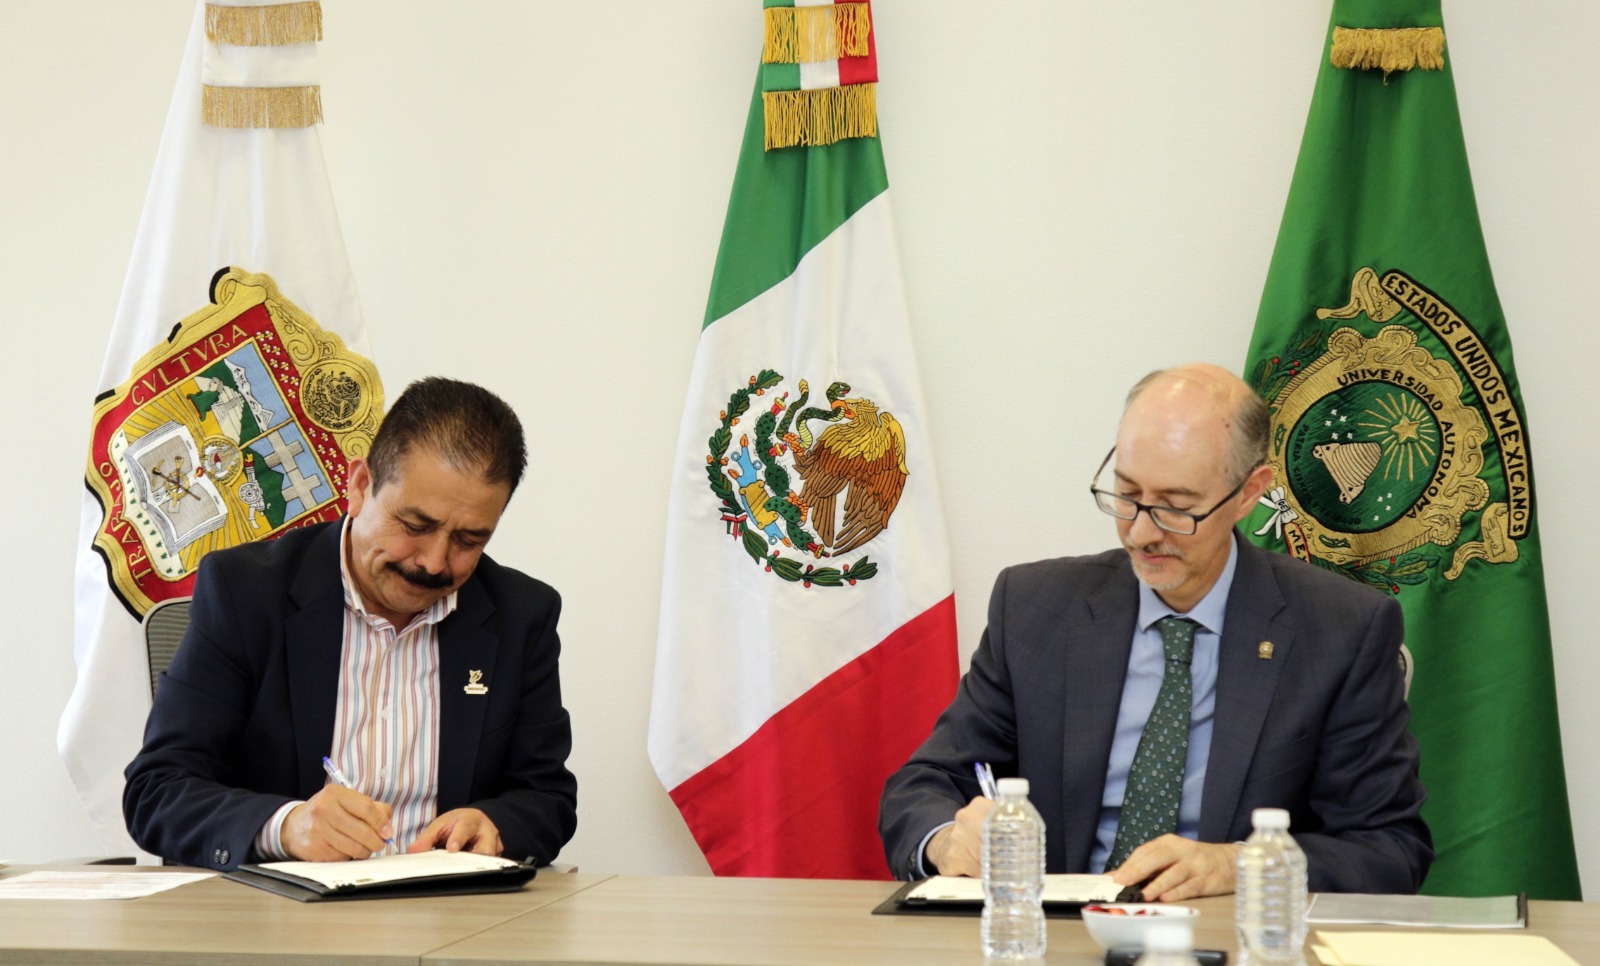 La firma de este convenio estrecha la colaboración interinstitucional, permitiendo una mayor coordinación entre las instituciones de nivel medio superior y superior del Estado de México.